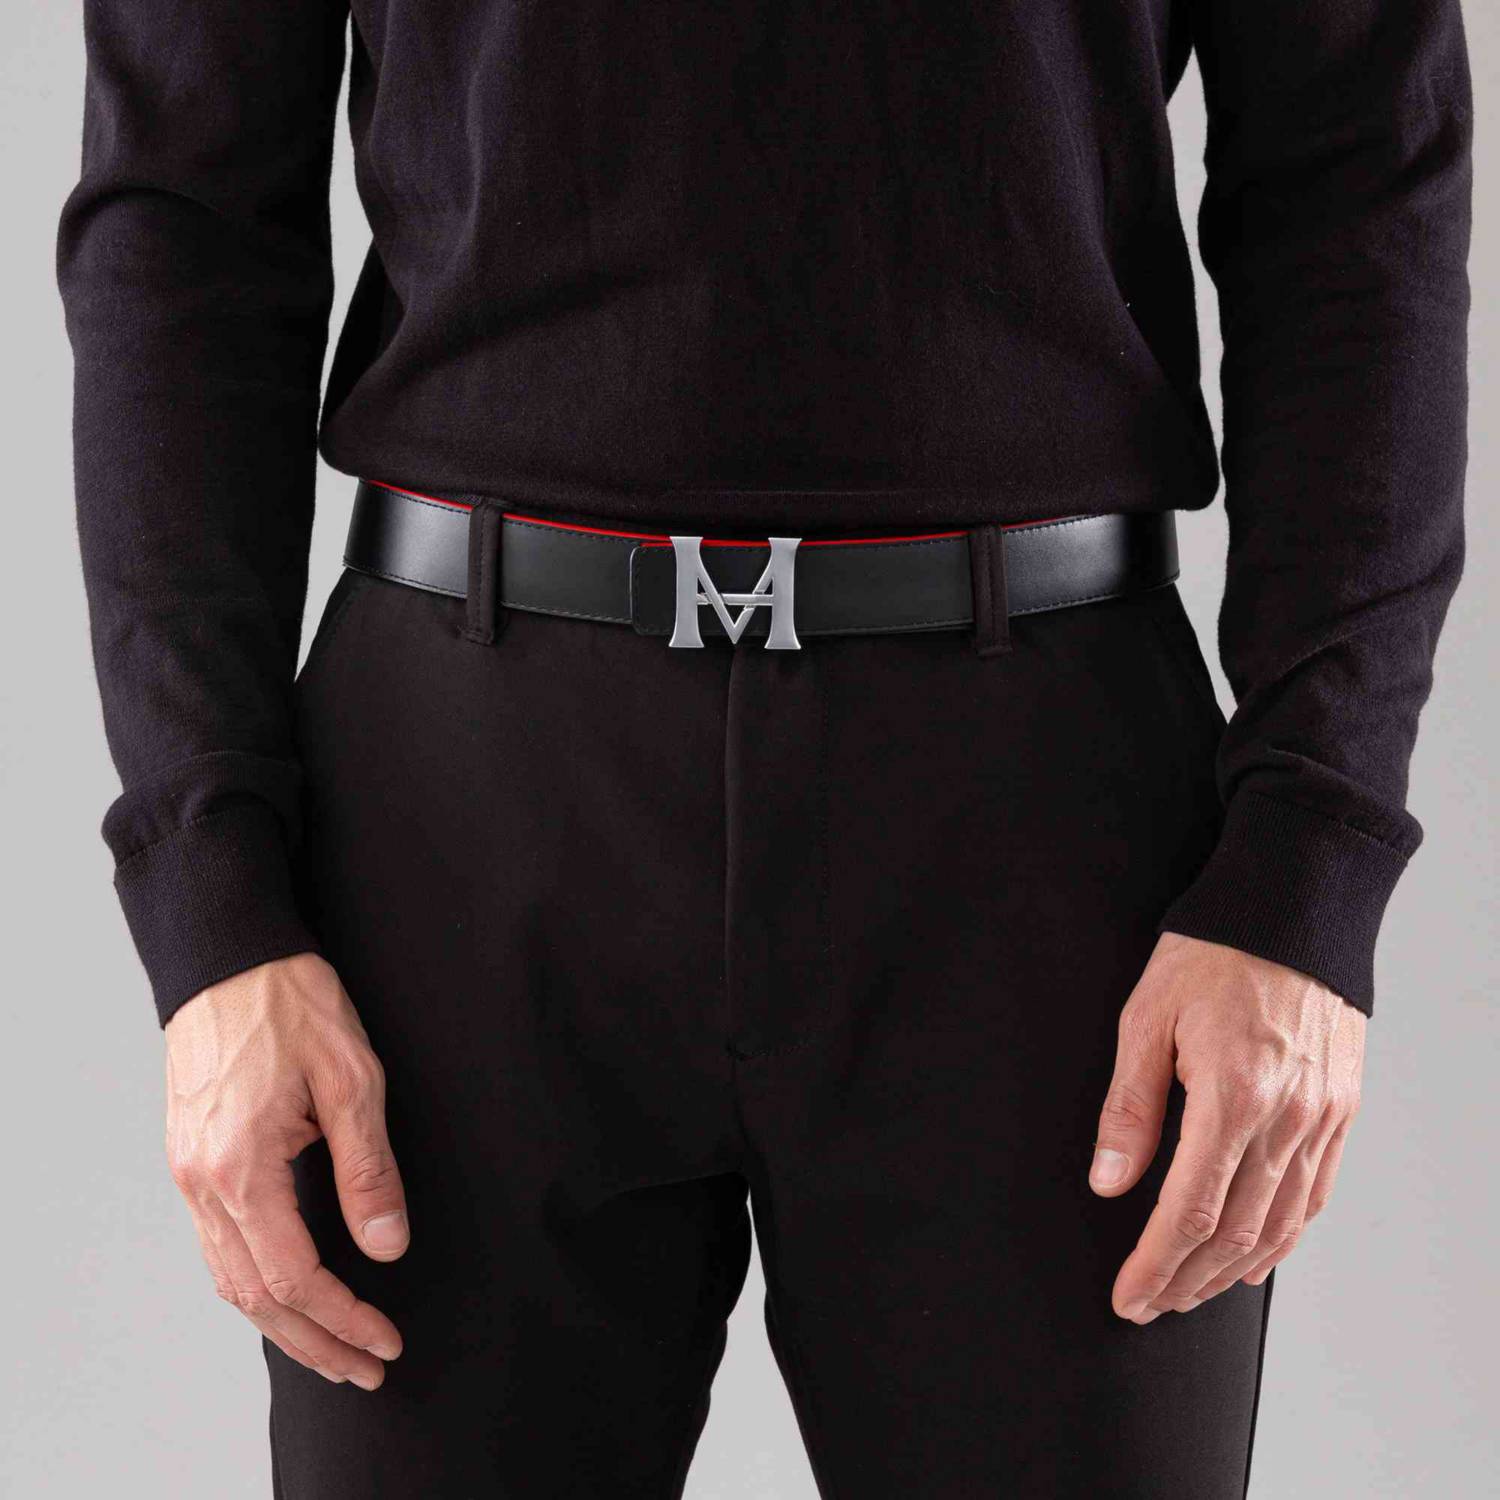 Cinturon hombre casual monograma doble faz 3.5 cm militar-toffe -  mariohernandezus